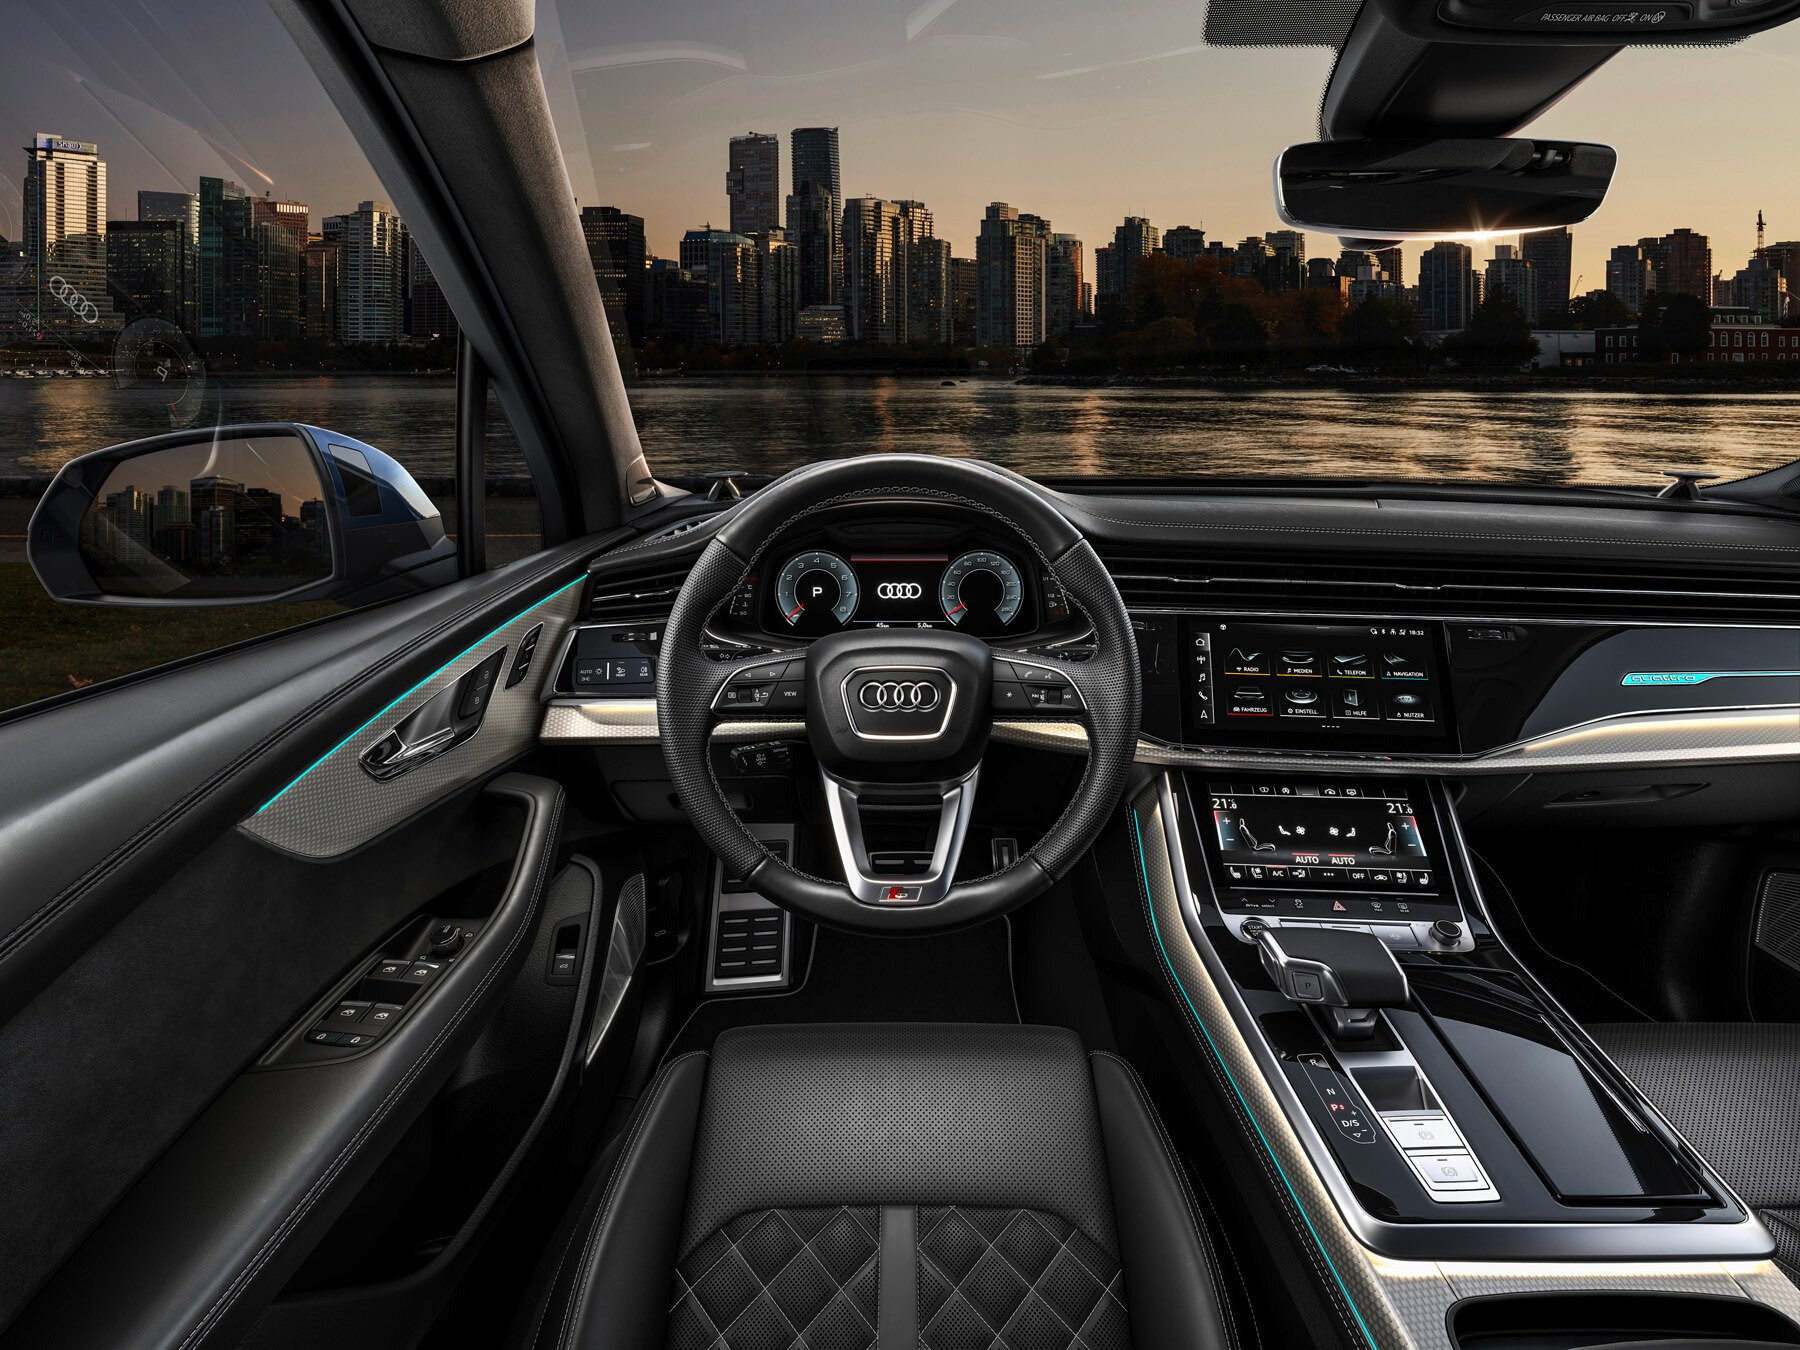 Không gian nội thất bên trong Audi Q7 hướng tới sự hiện đại và tinh giản